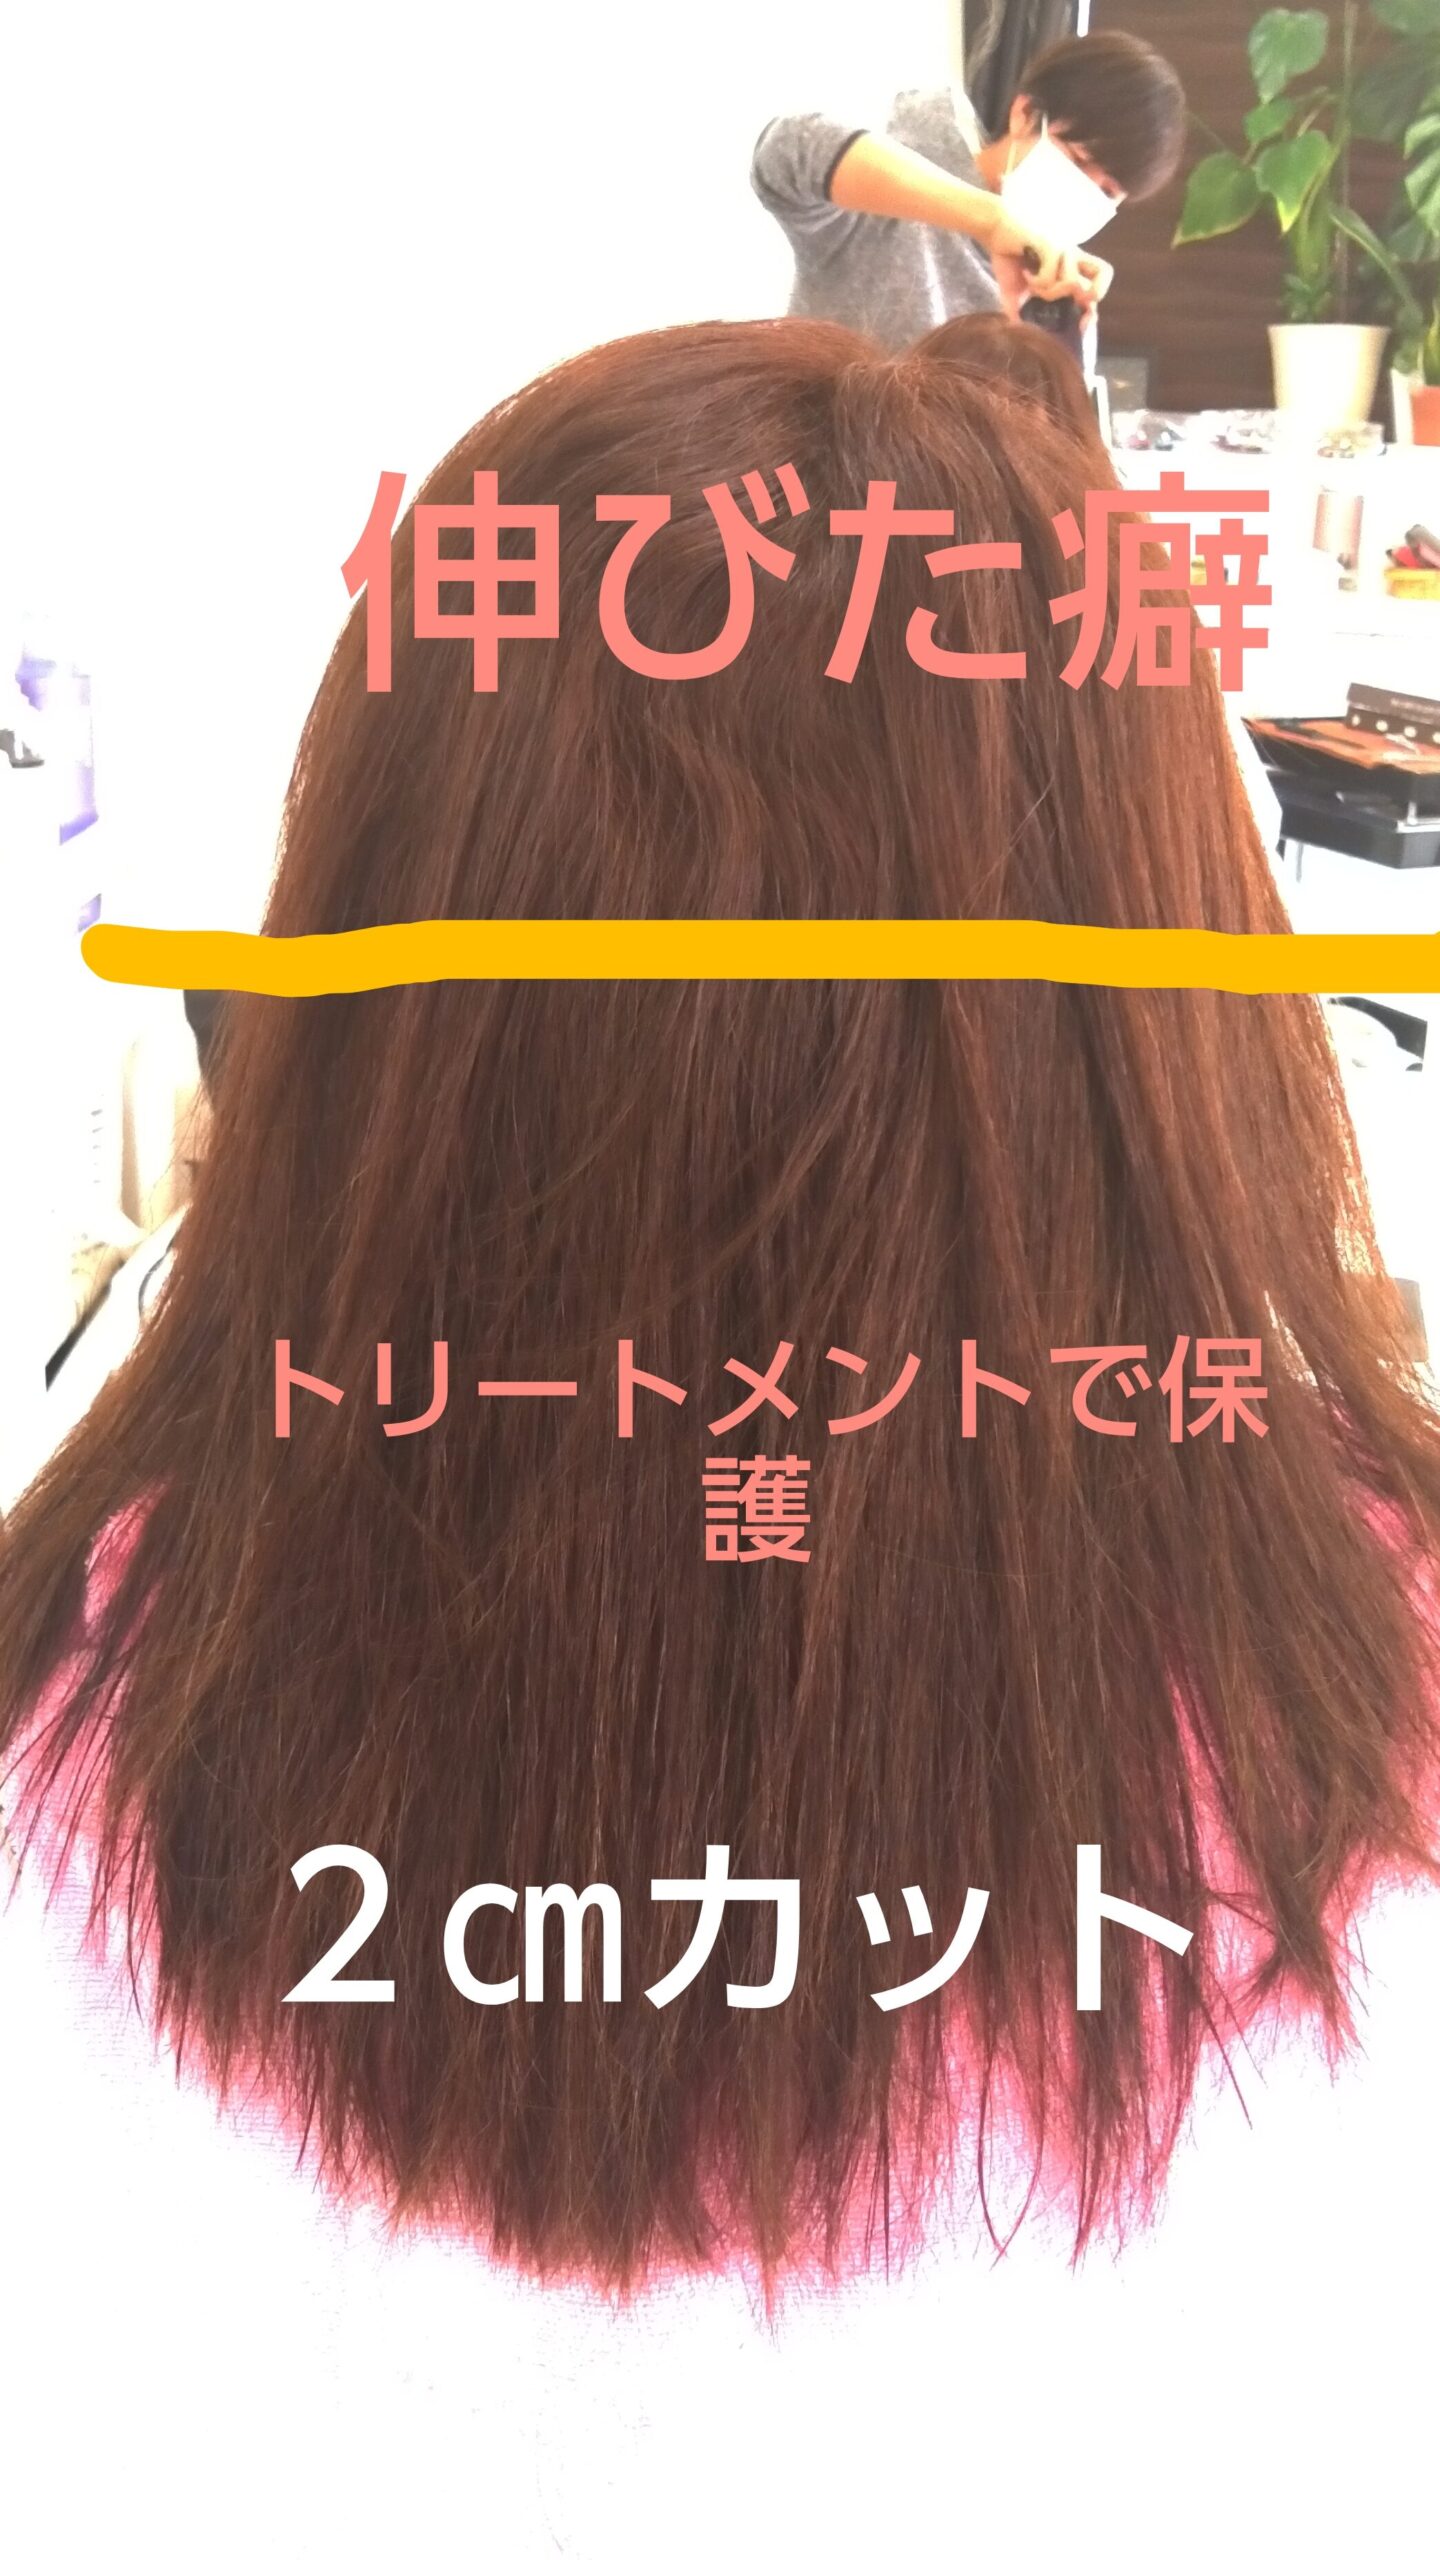 石巻 東松島 美容室ういんく の縮毛矯正 ストレートエステ 施術例4 髪が綺麗になる東松島市 美容室ういんくの髪質改善 オススメ商品など